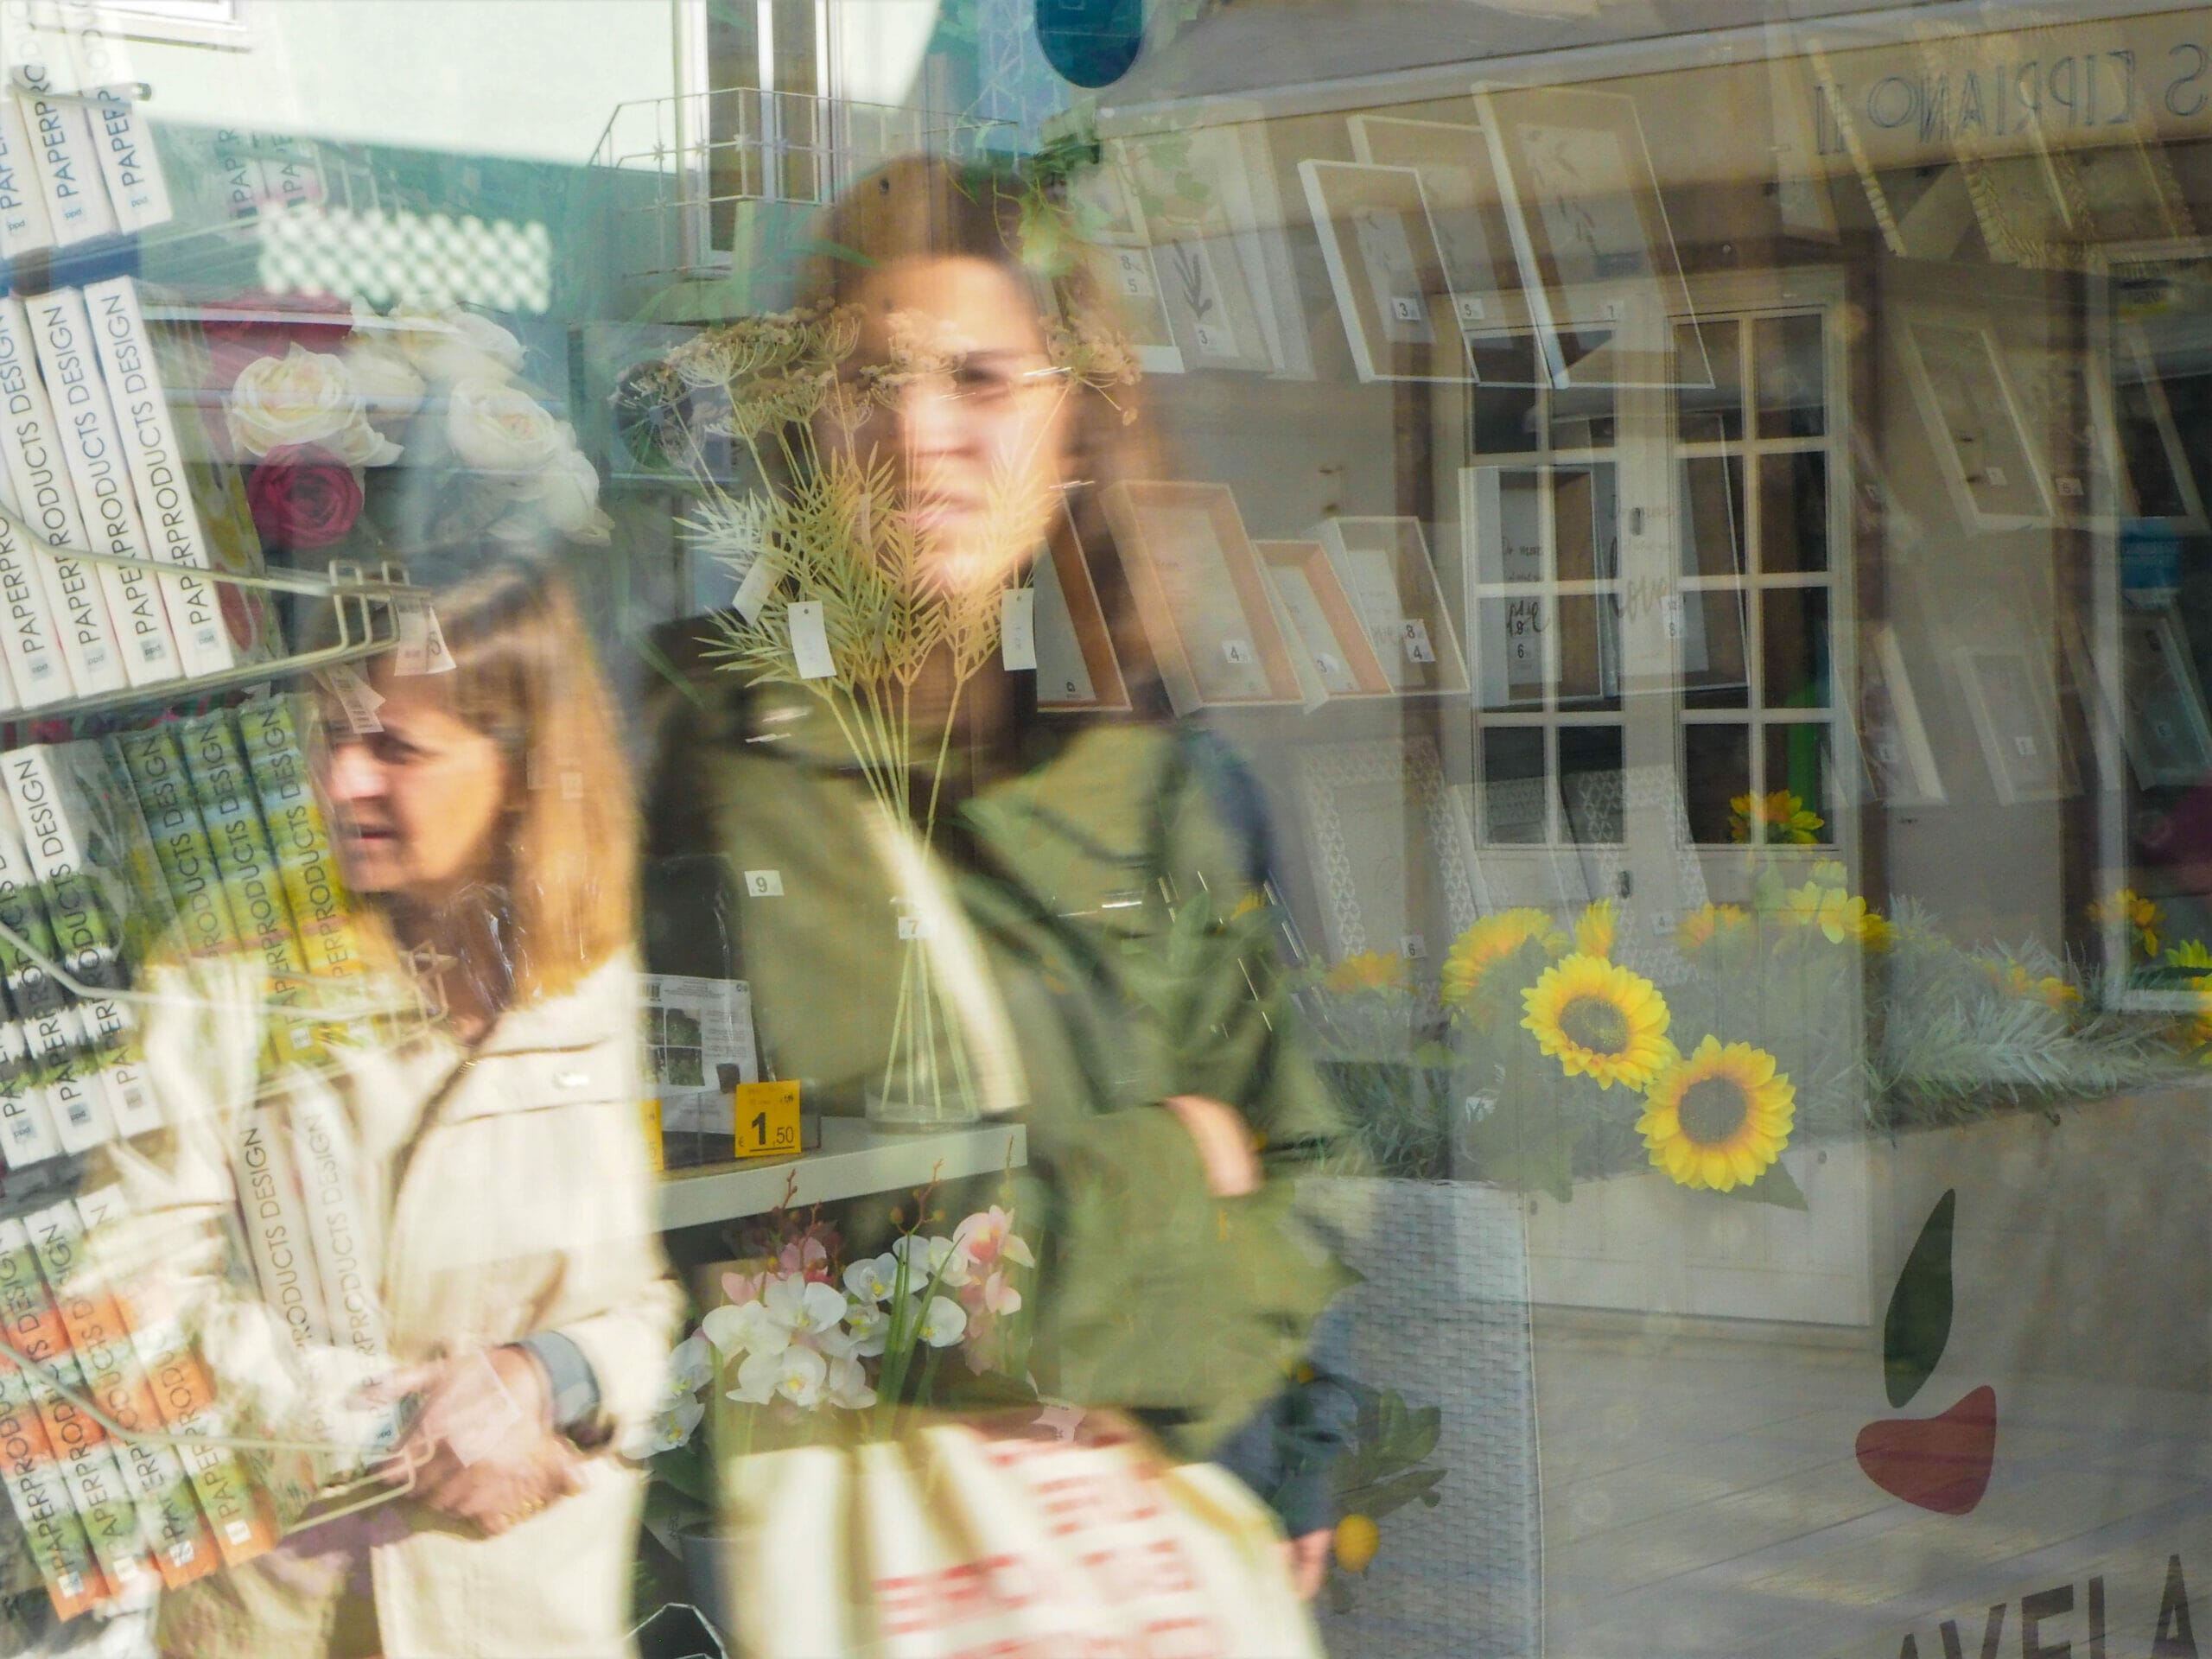 Reflections of women in a window.